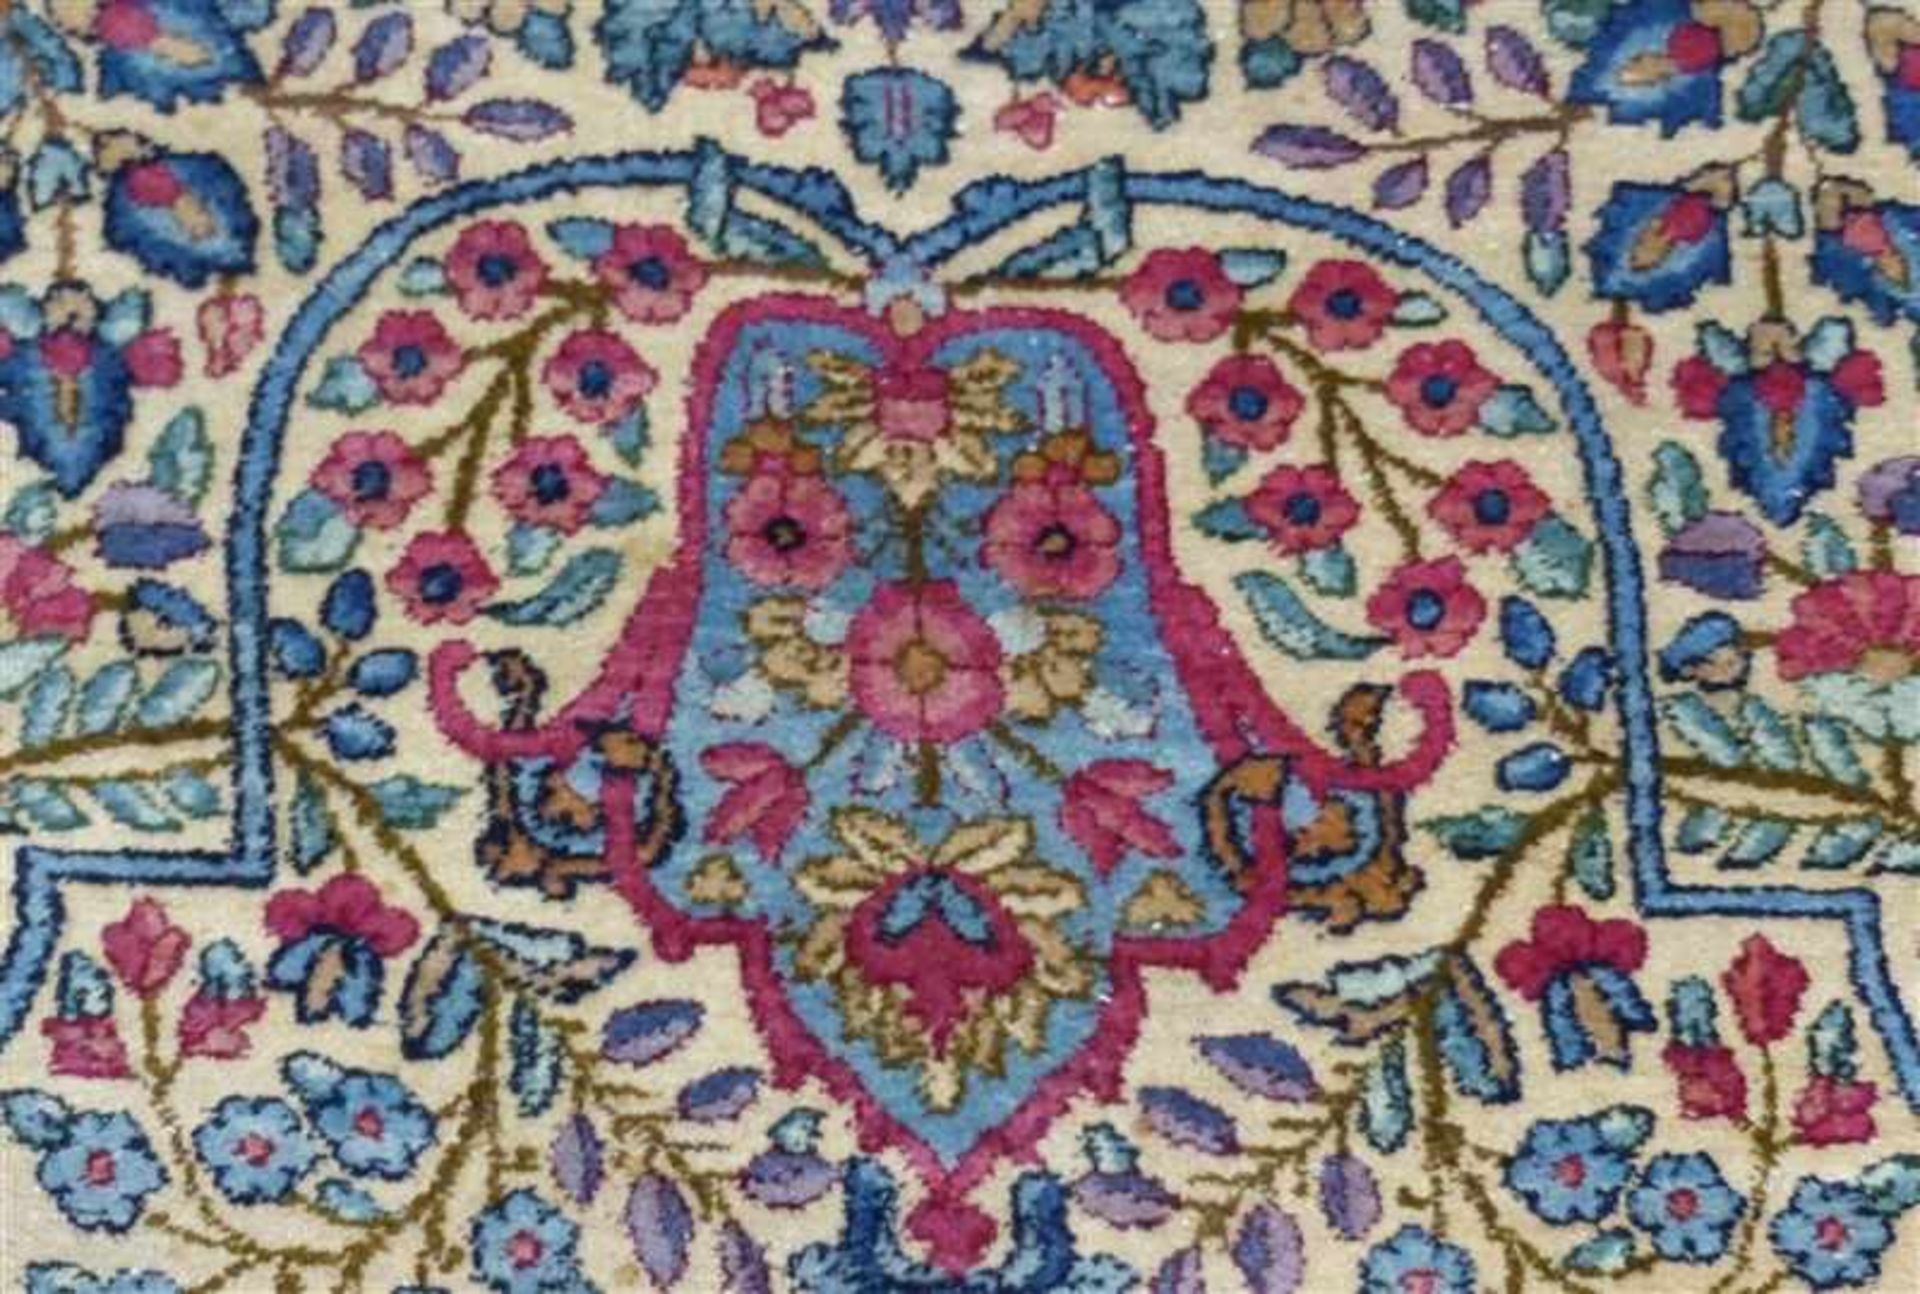 Täbris, altblau-beige grundig, Mittelmedaillon, florales Dekor, teilweise mit Abrash, seltene Größe, - Bild 2 aus 7